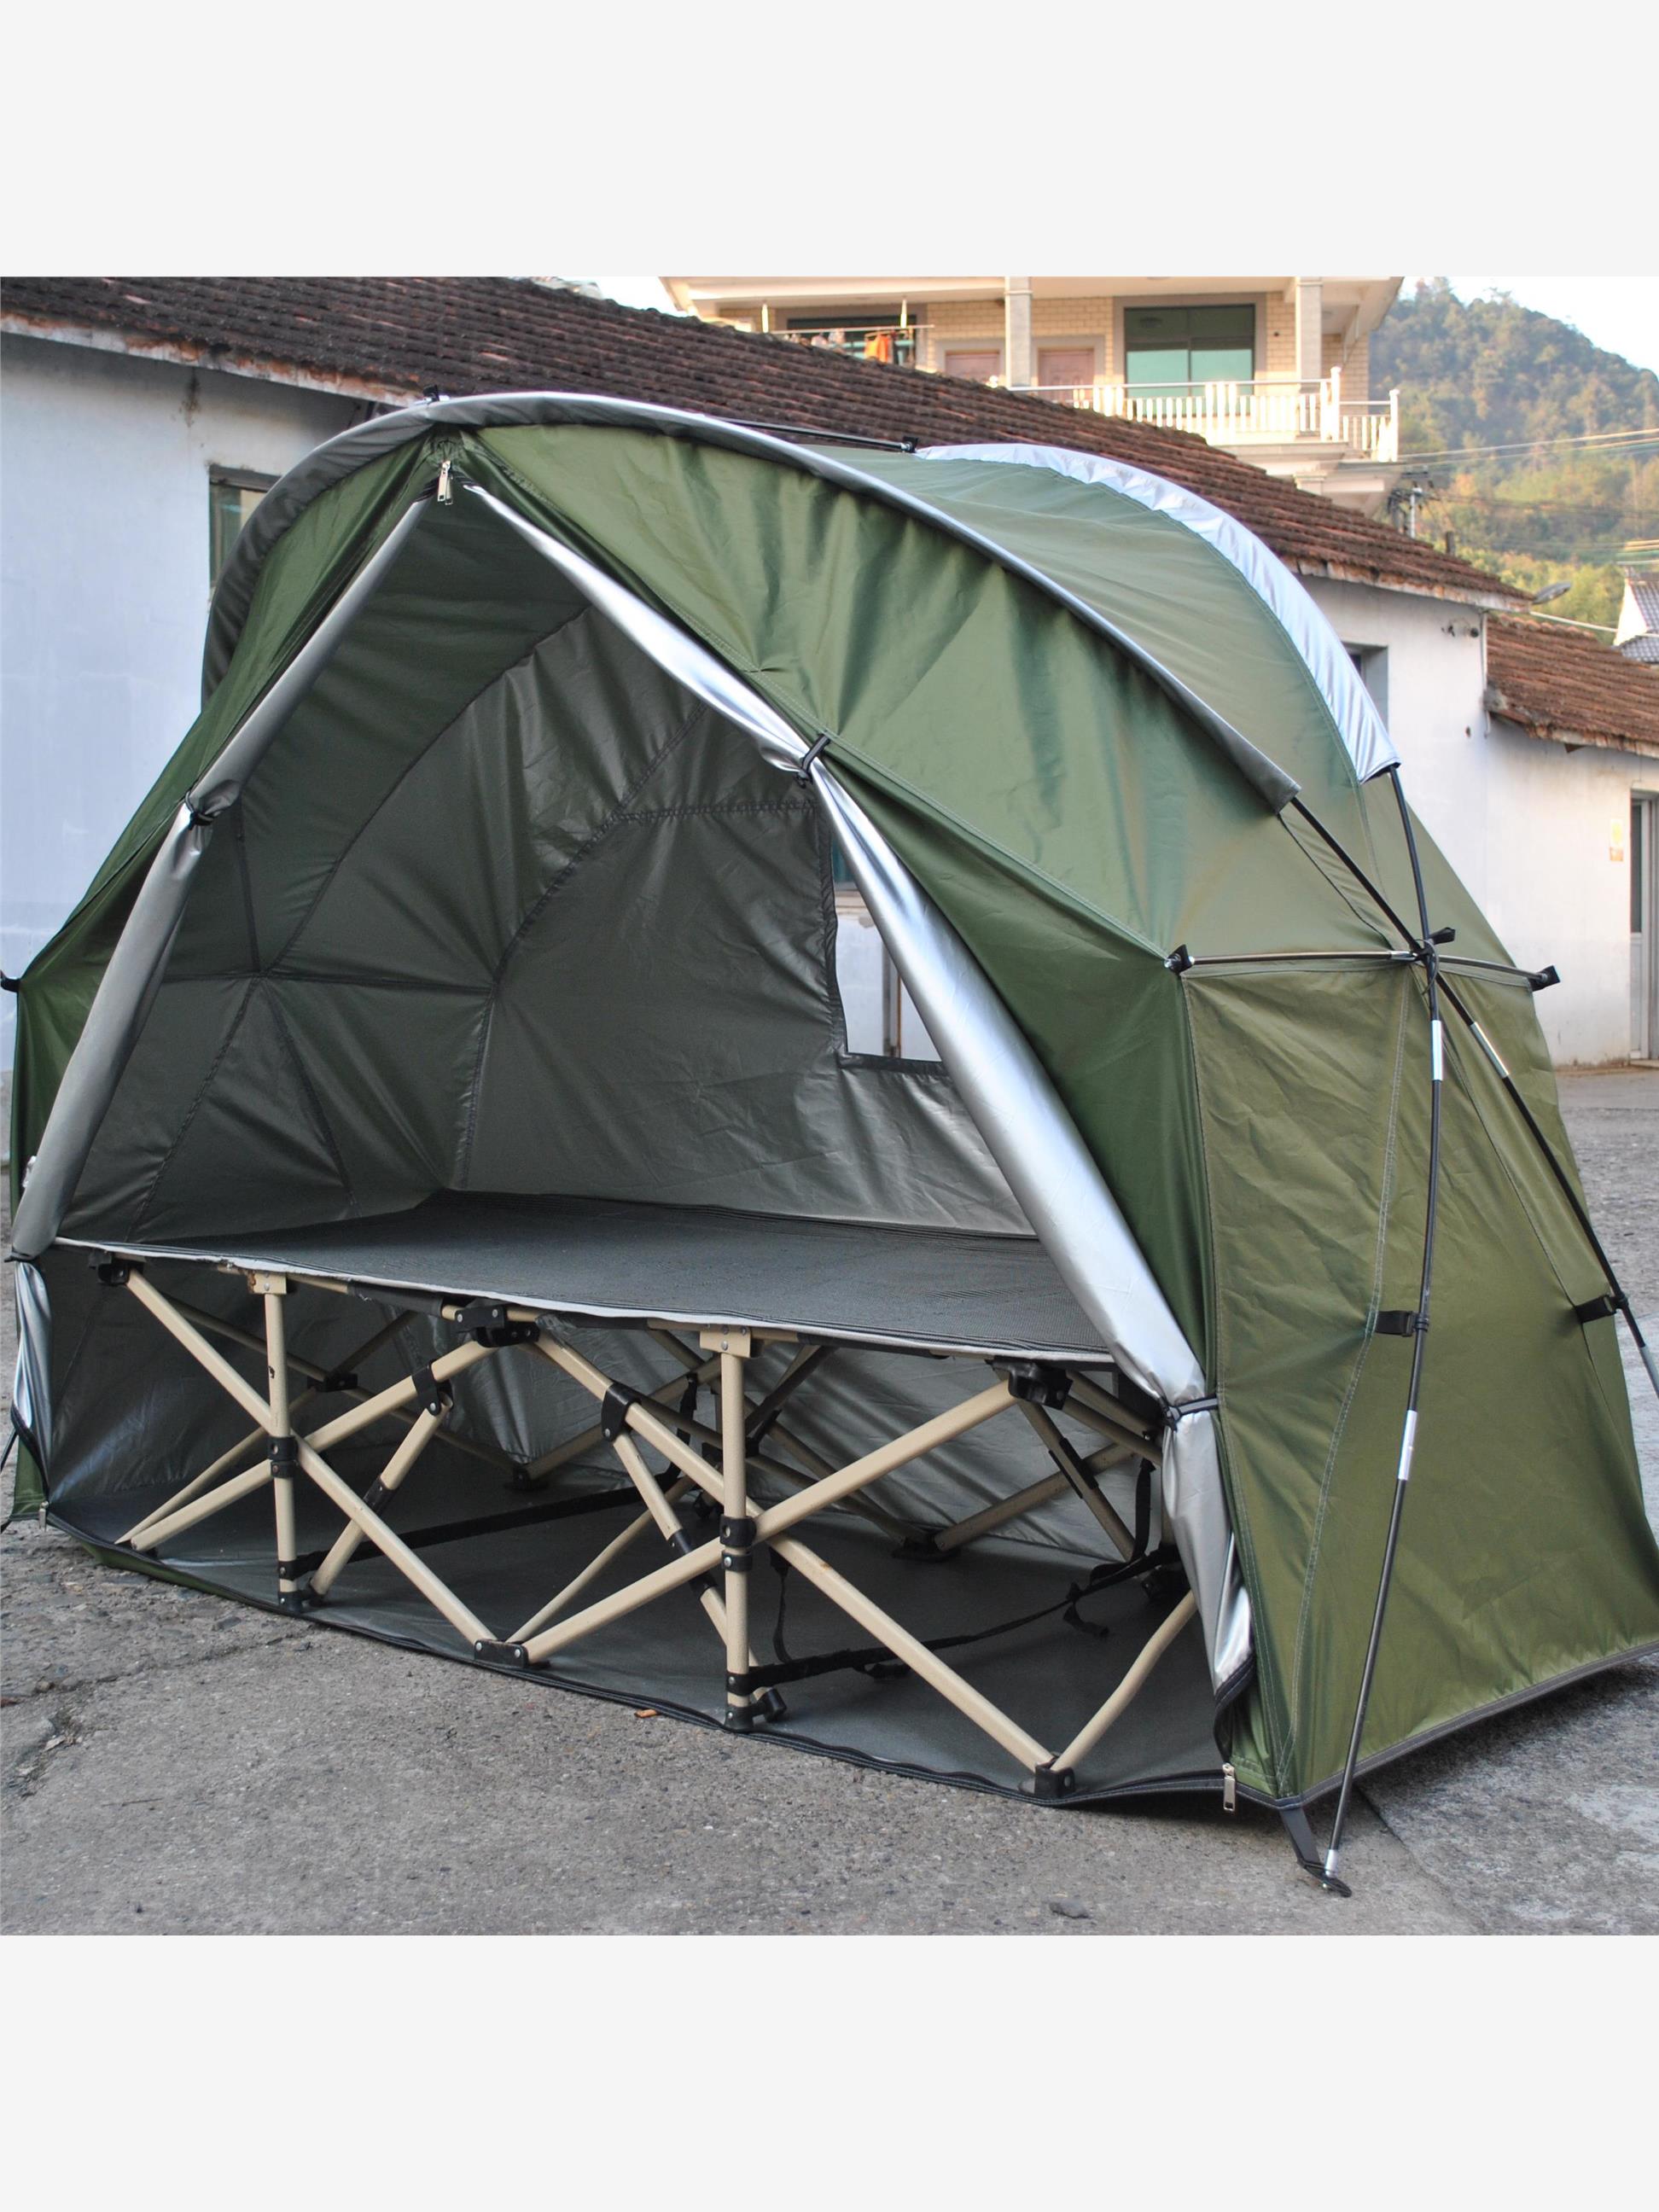 户外露营单兵帐篷帐篷,骑行自行车帐篷,保暖帐篷，不带内部行军床